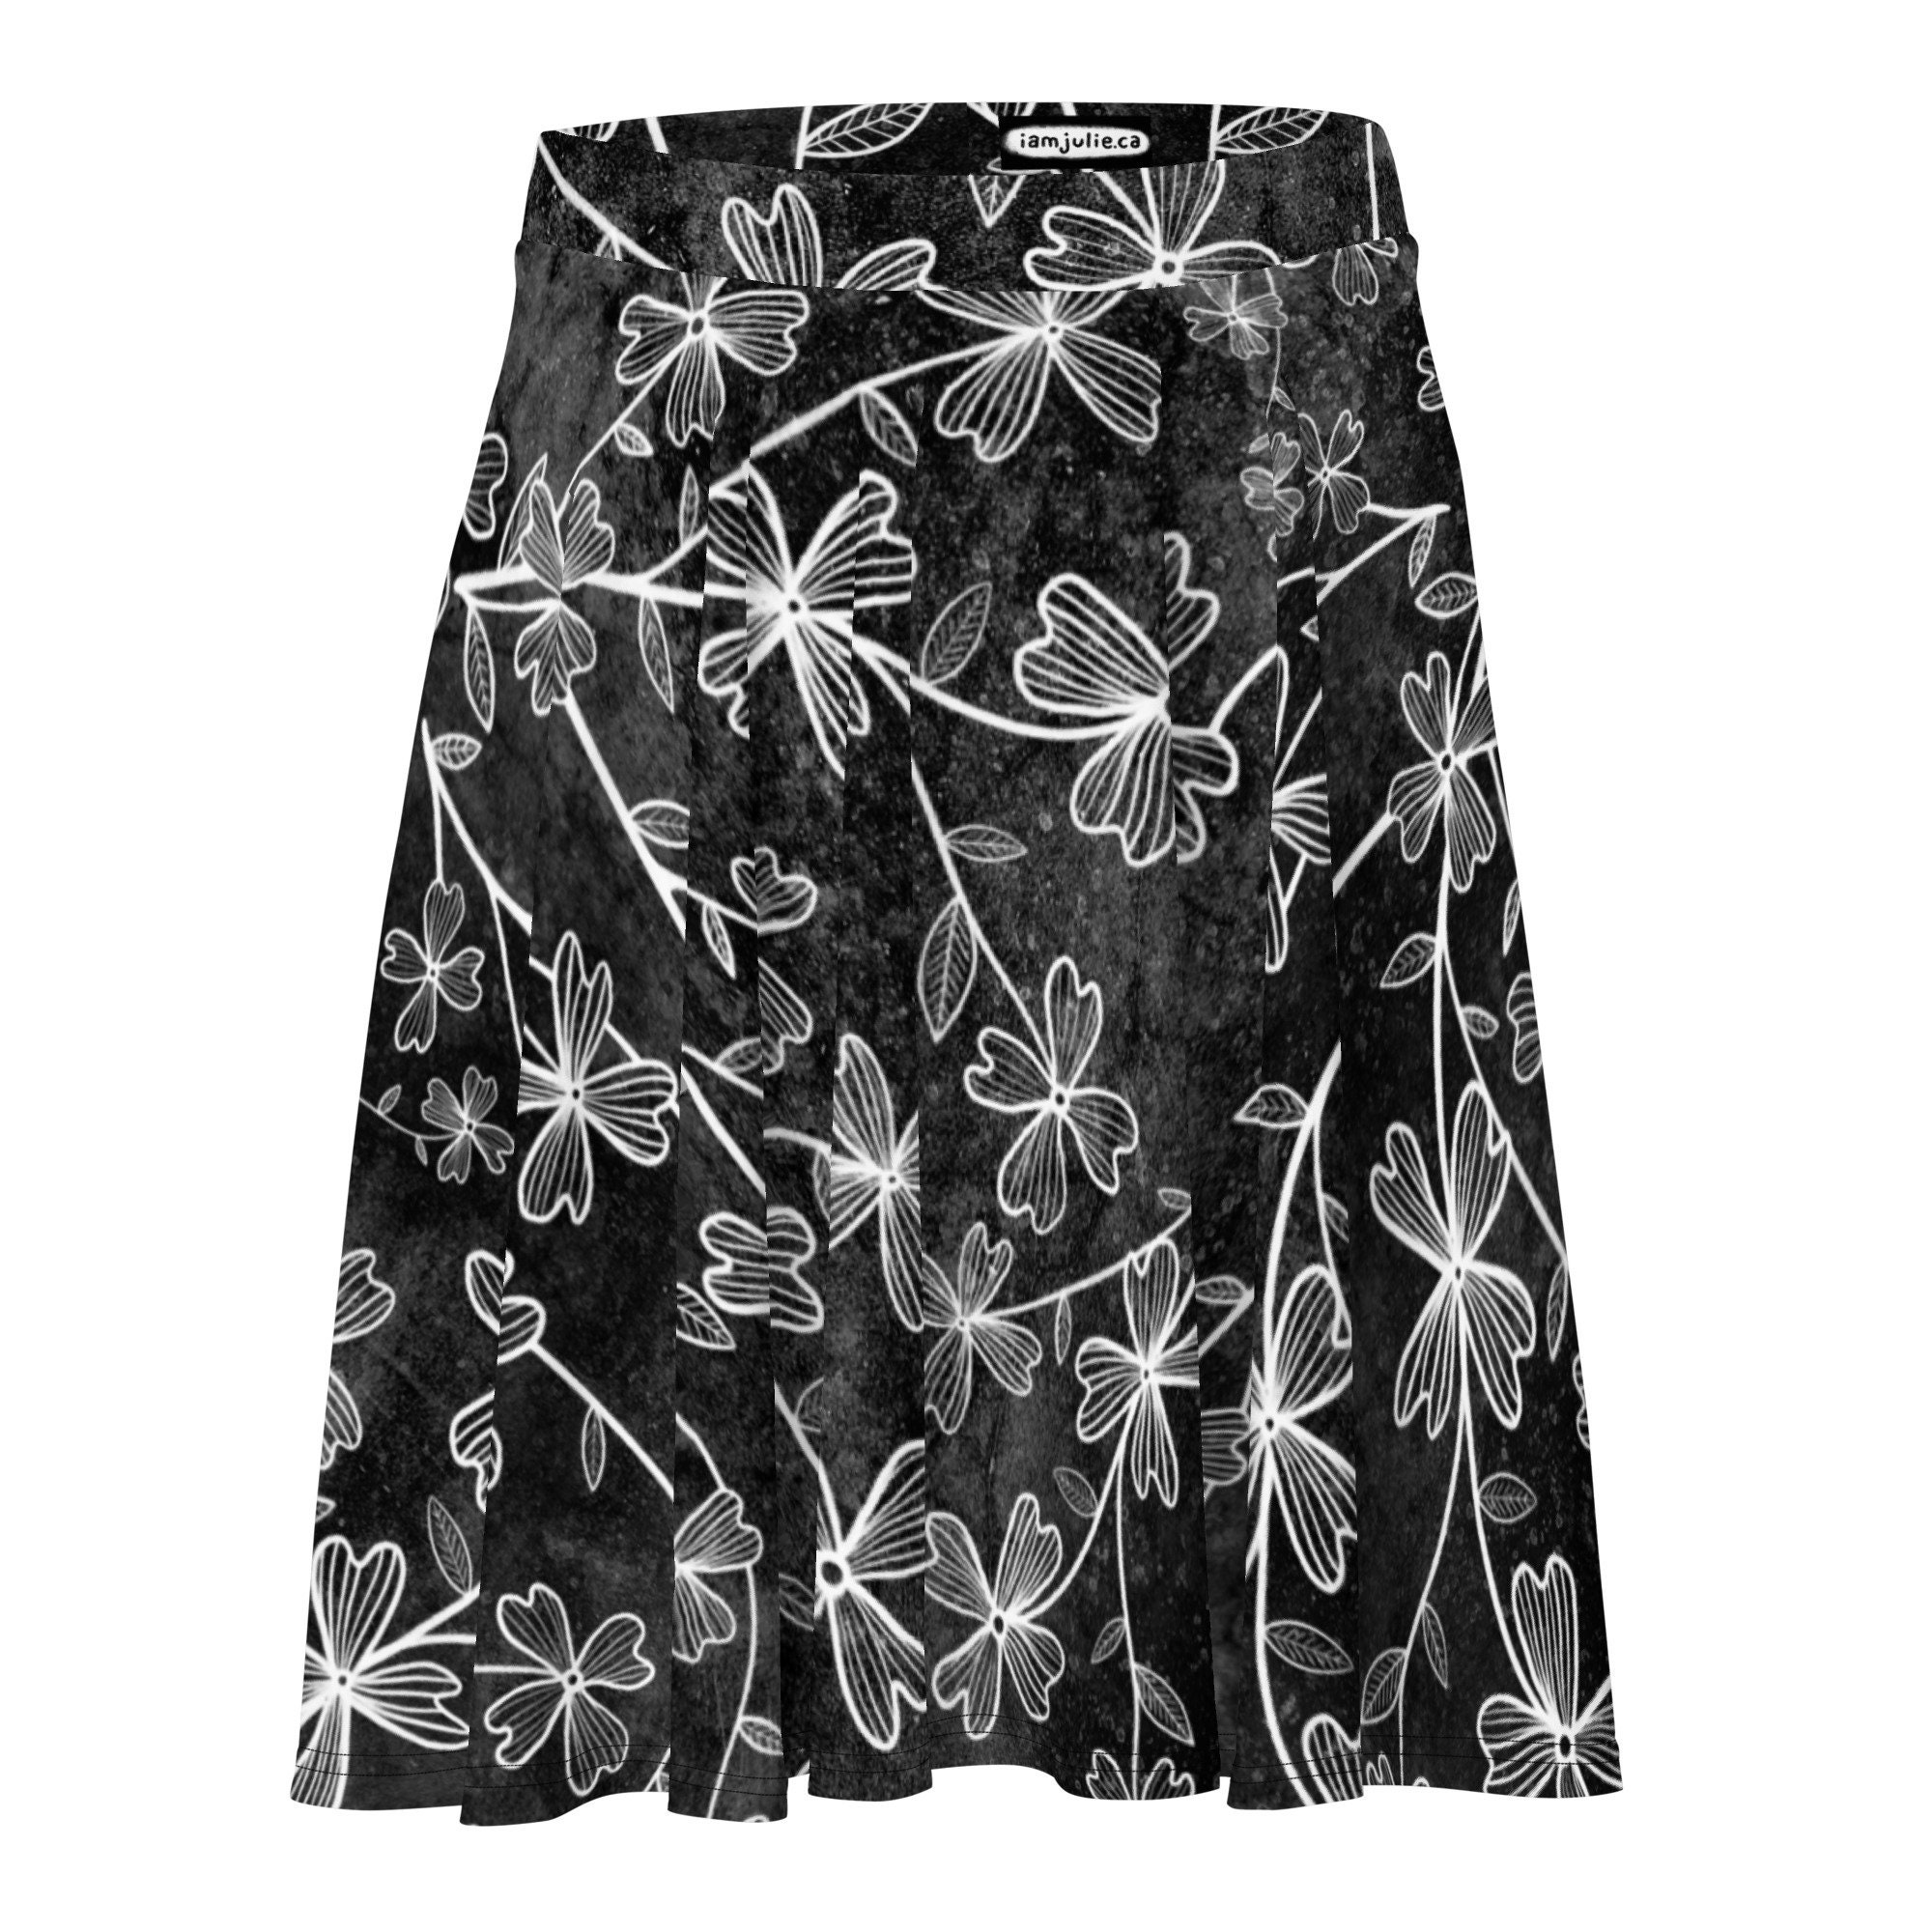 Dogwood Flowers Skater Skirt, Women's Skater Skirt